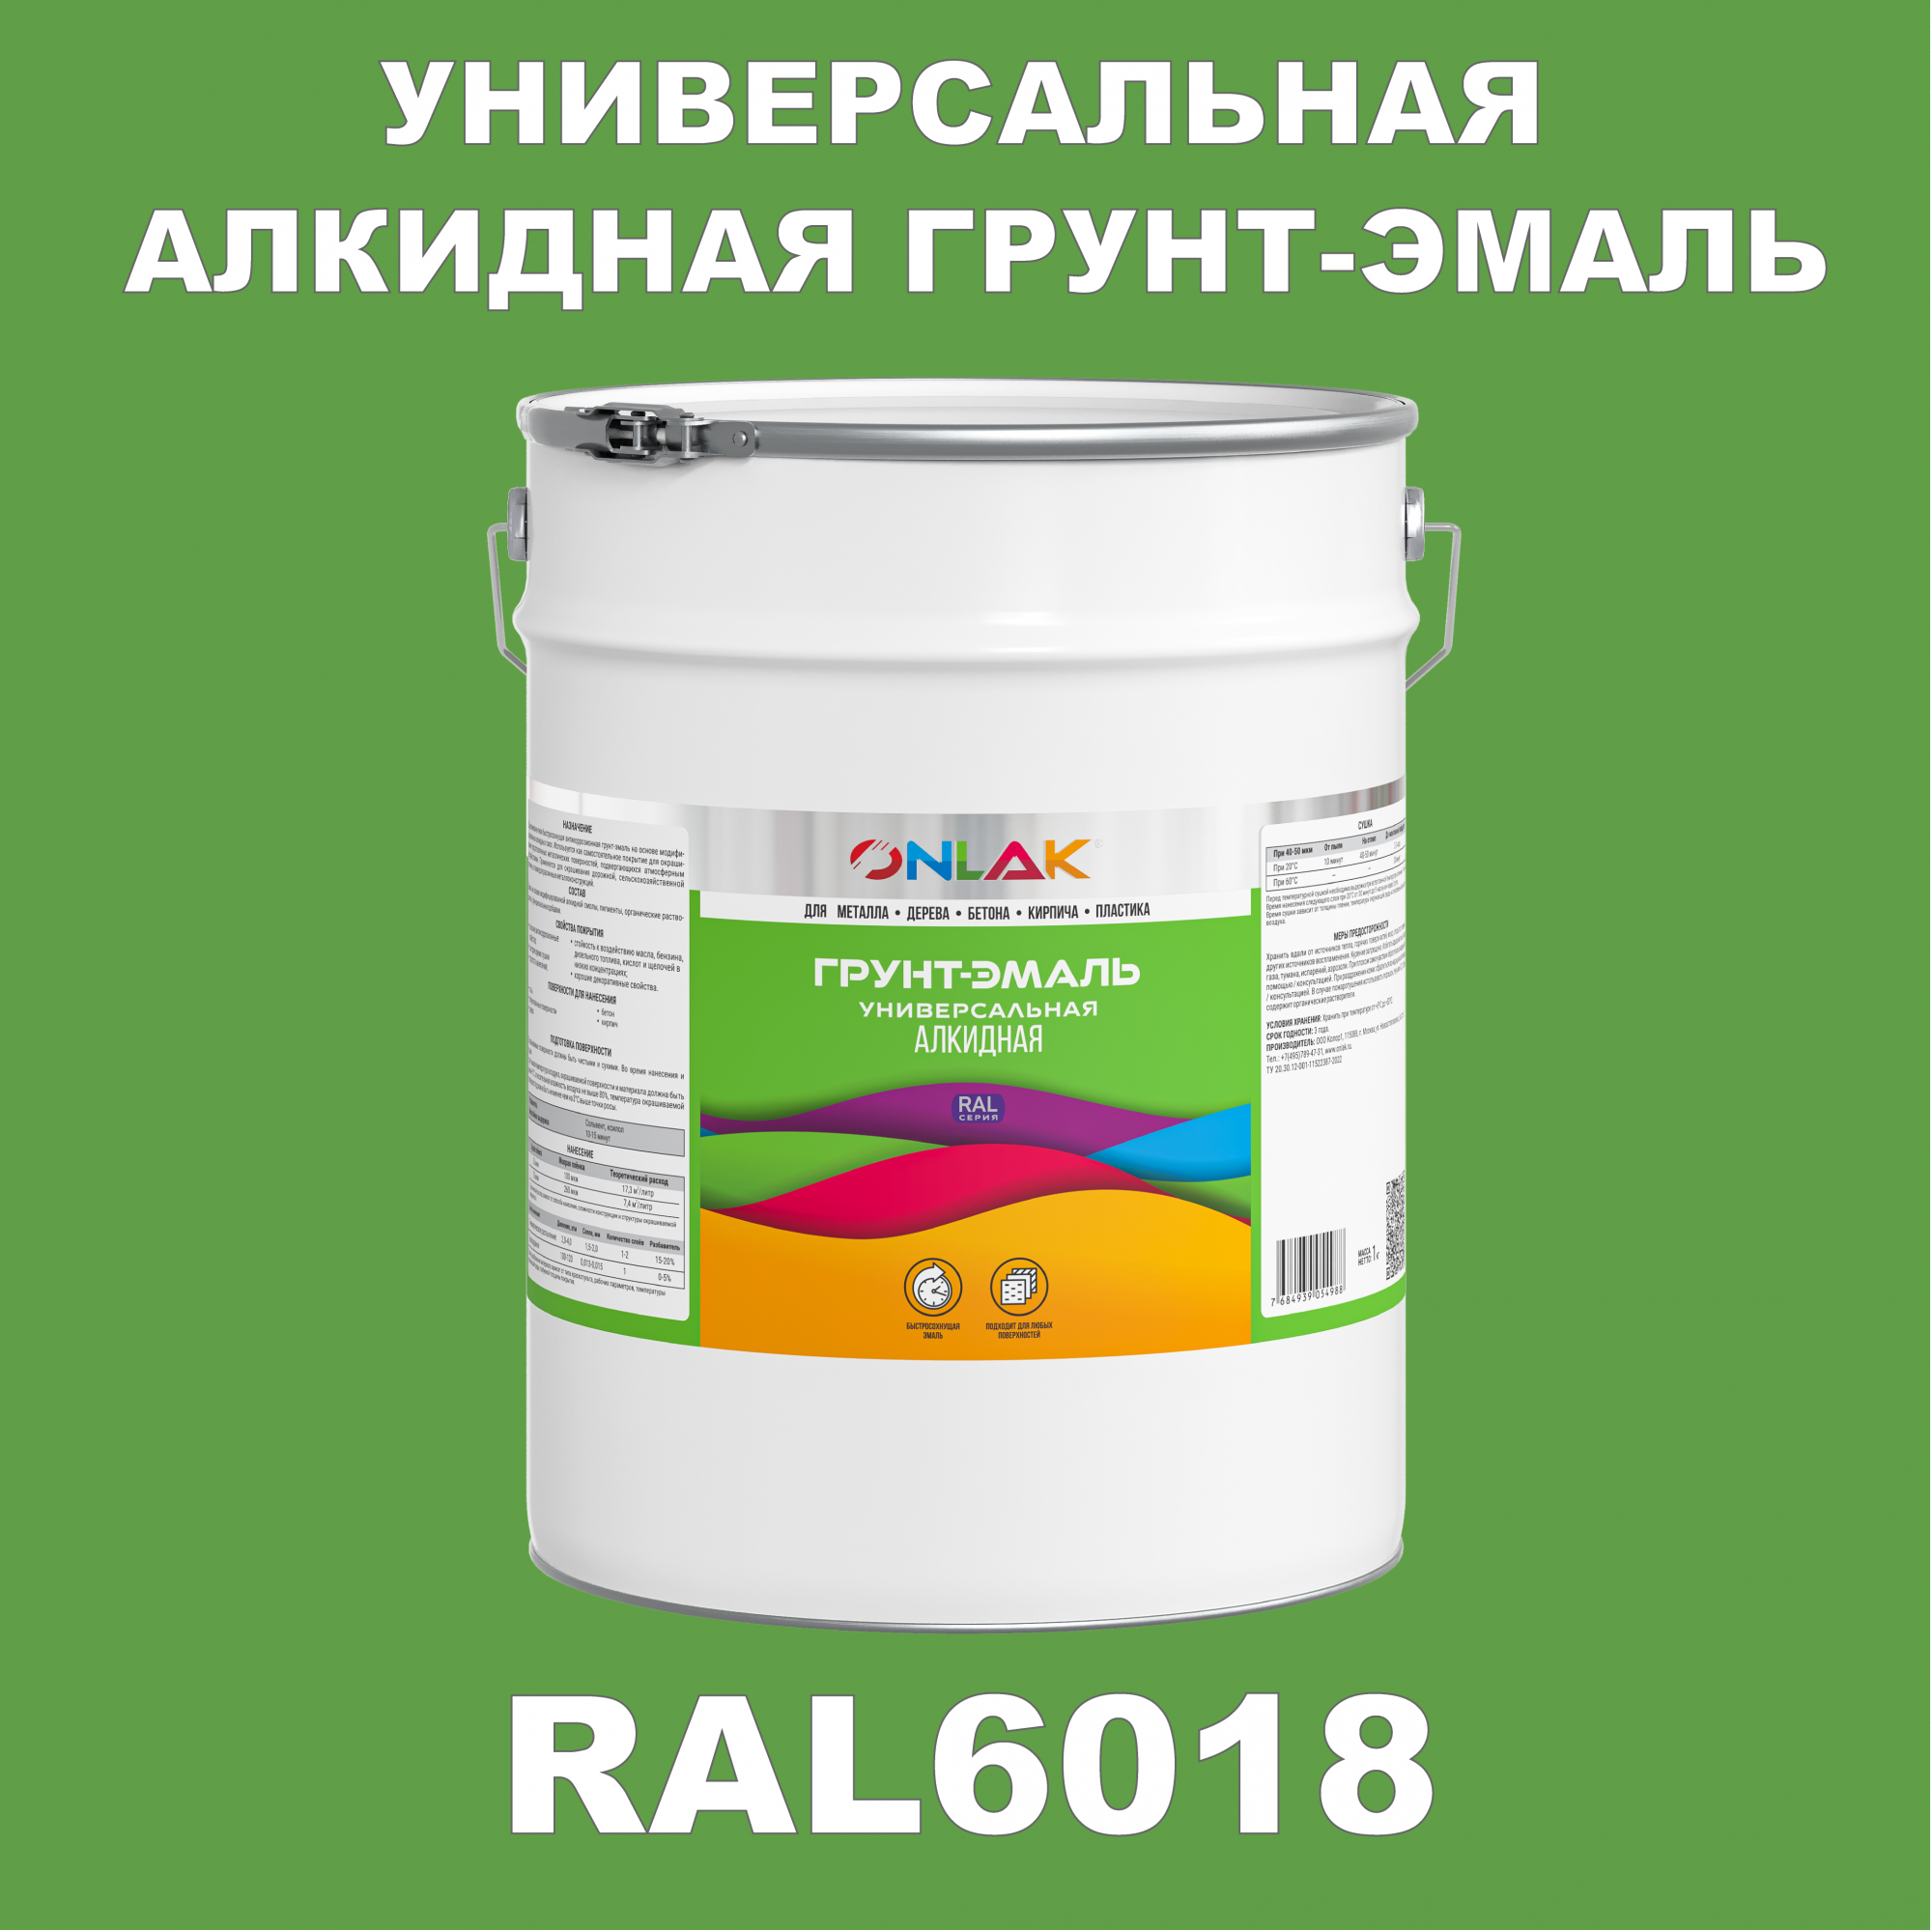 Грунт-эмаль ONLAK 1К RAL6018 антикоррозионная алкидная по металлу по ржавчине 20 кг грунт эмаль yollo по ржавчине алкидная зеленая 0 9 кг